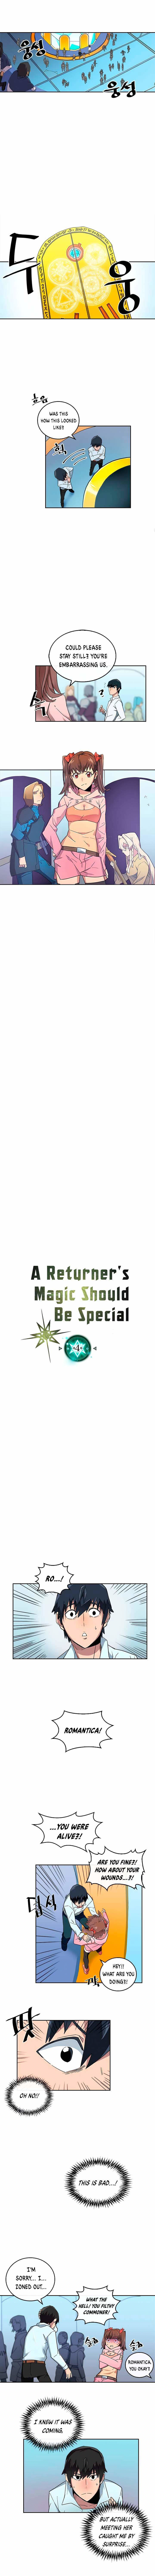 a-returners-magic-should-be-special-chap-4-1